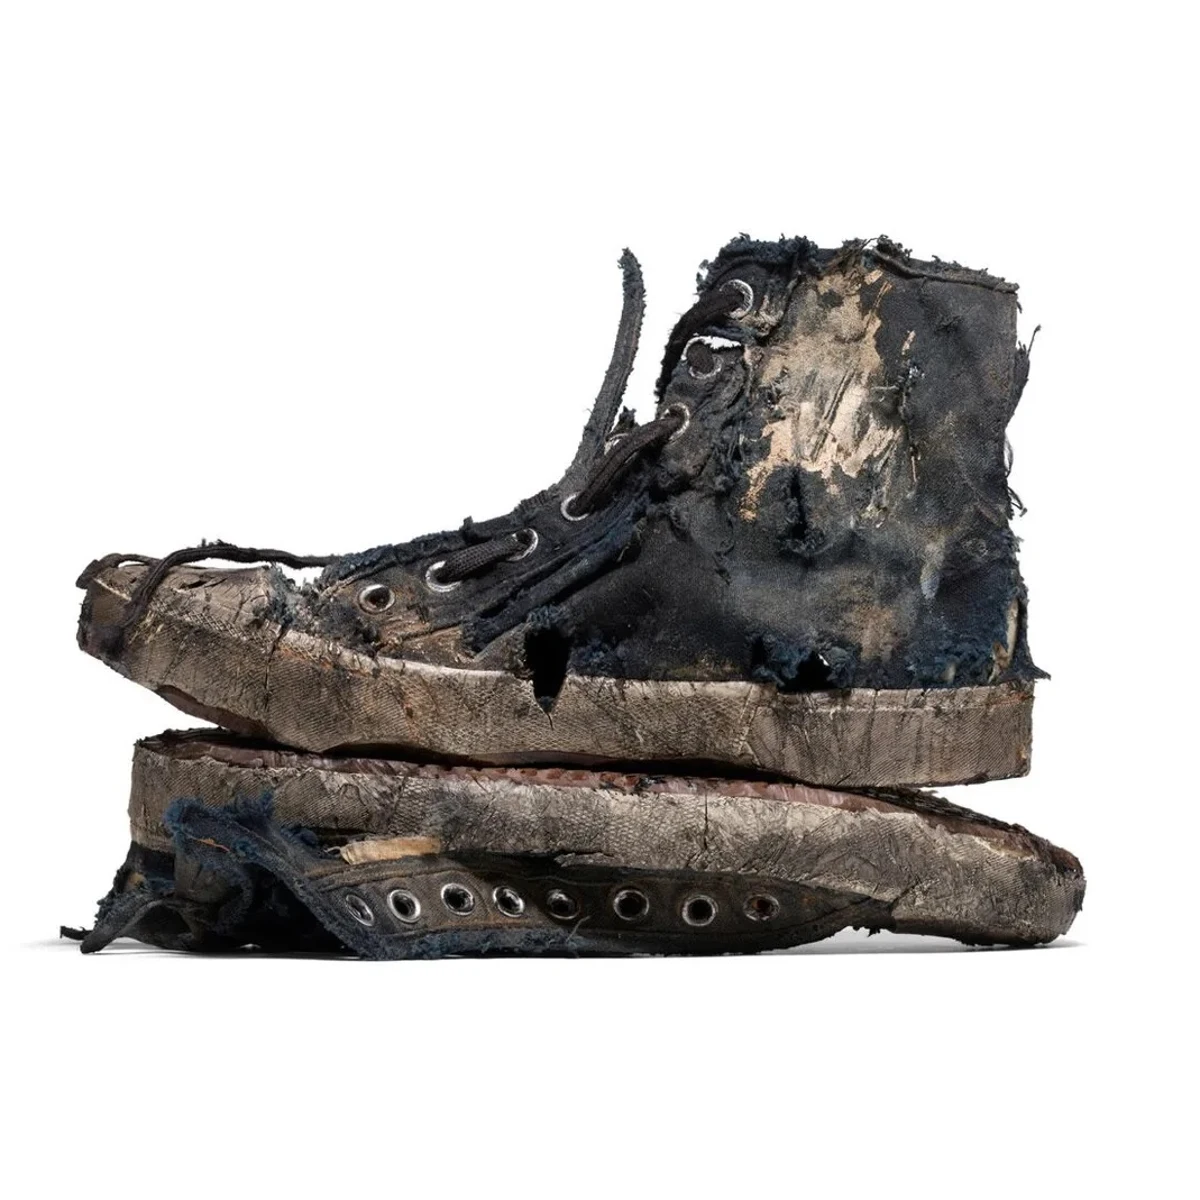 agota su modelo de zapatillas "destrozadas" a su precio euros | Onda Cero Radio